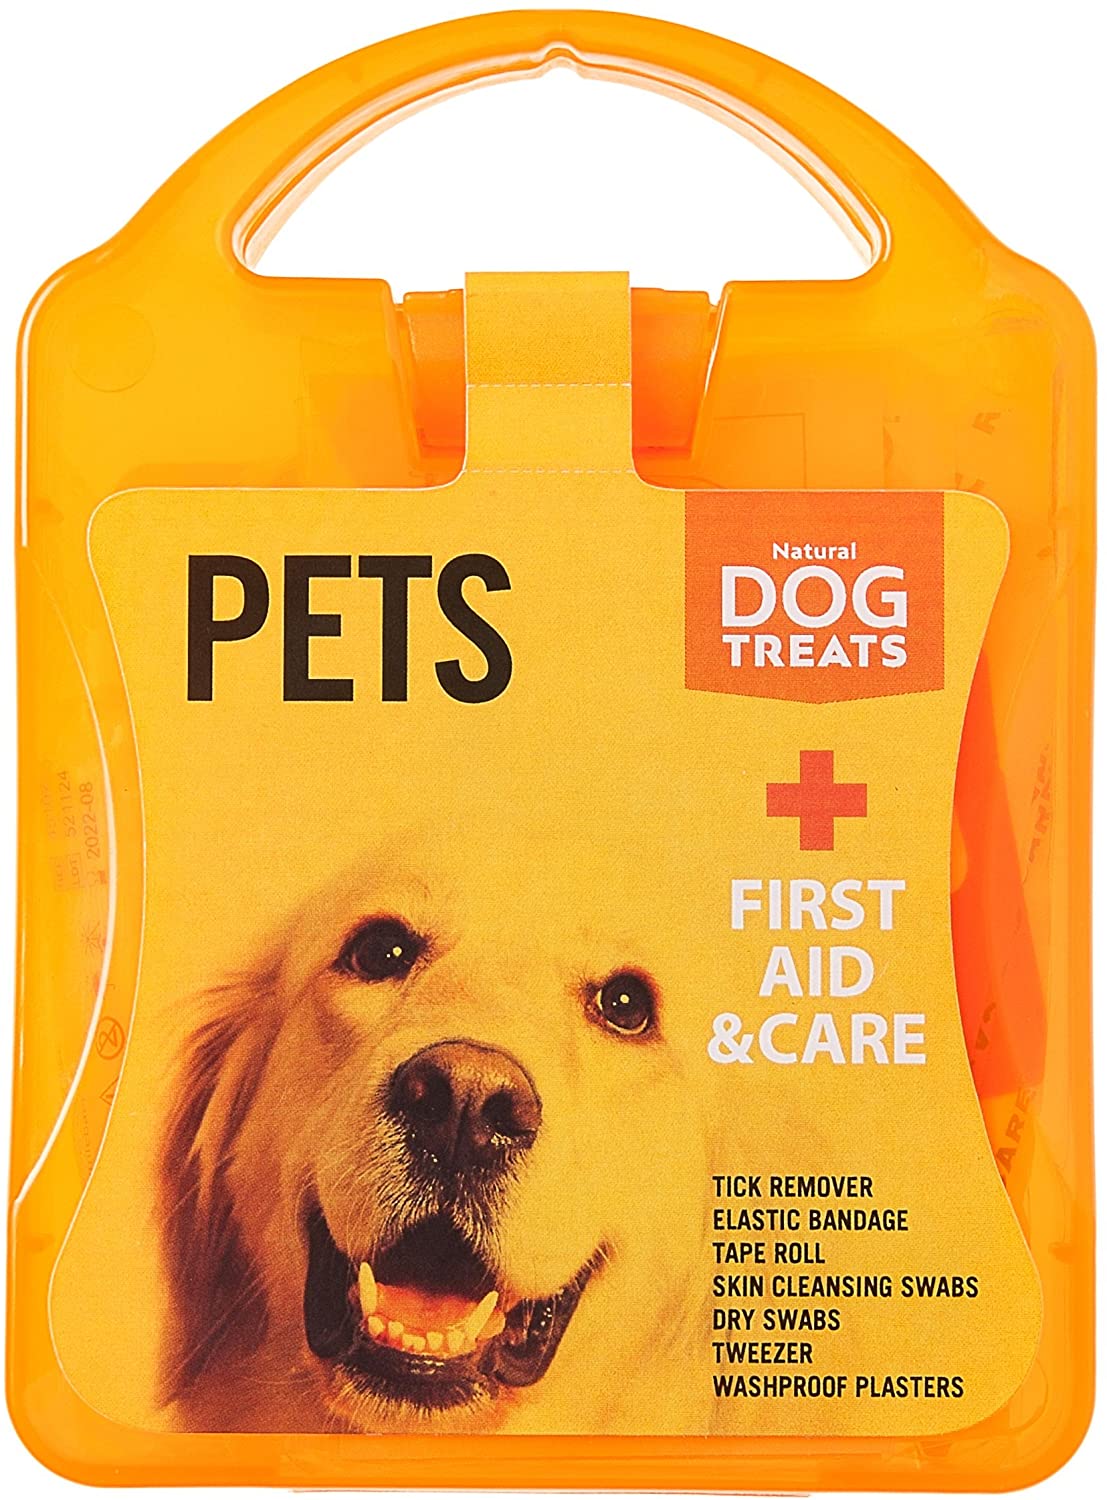  Natural Dog Treats Premium Botiquín de Primeros Auxilios para Perros y Gatos, Extractores de Garrapatas, Toallitas, Vendajes 